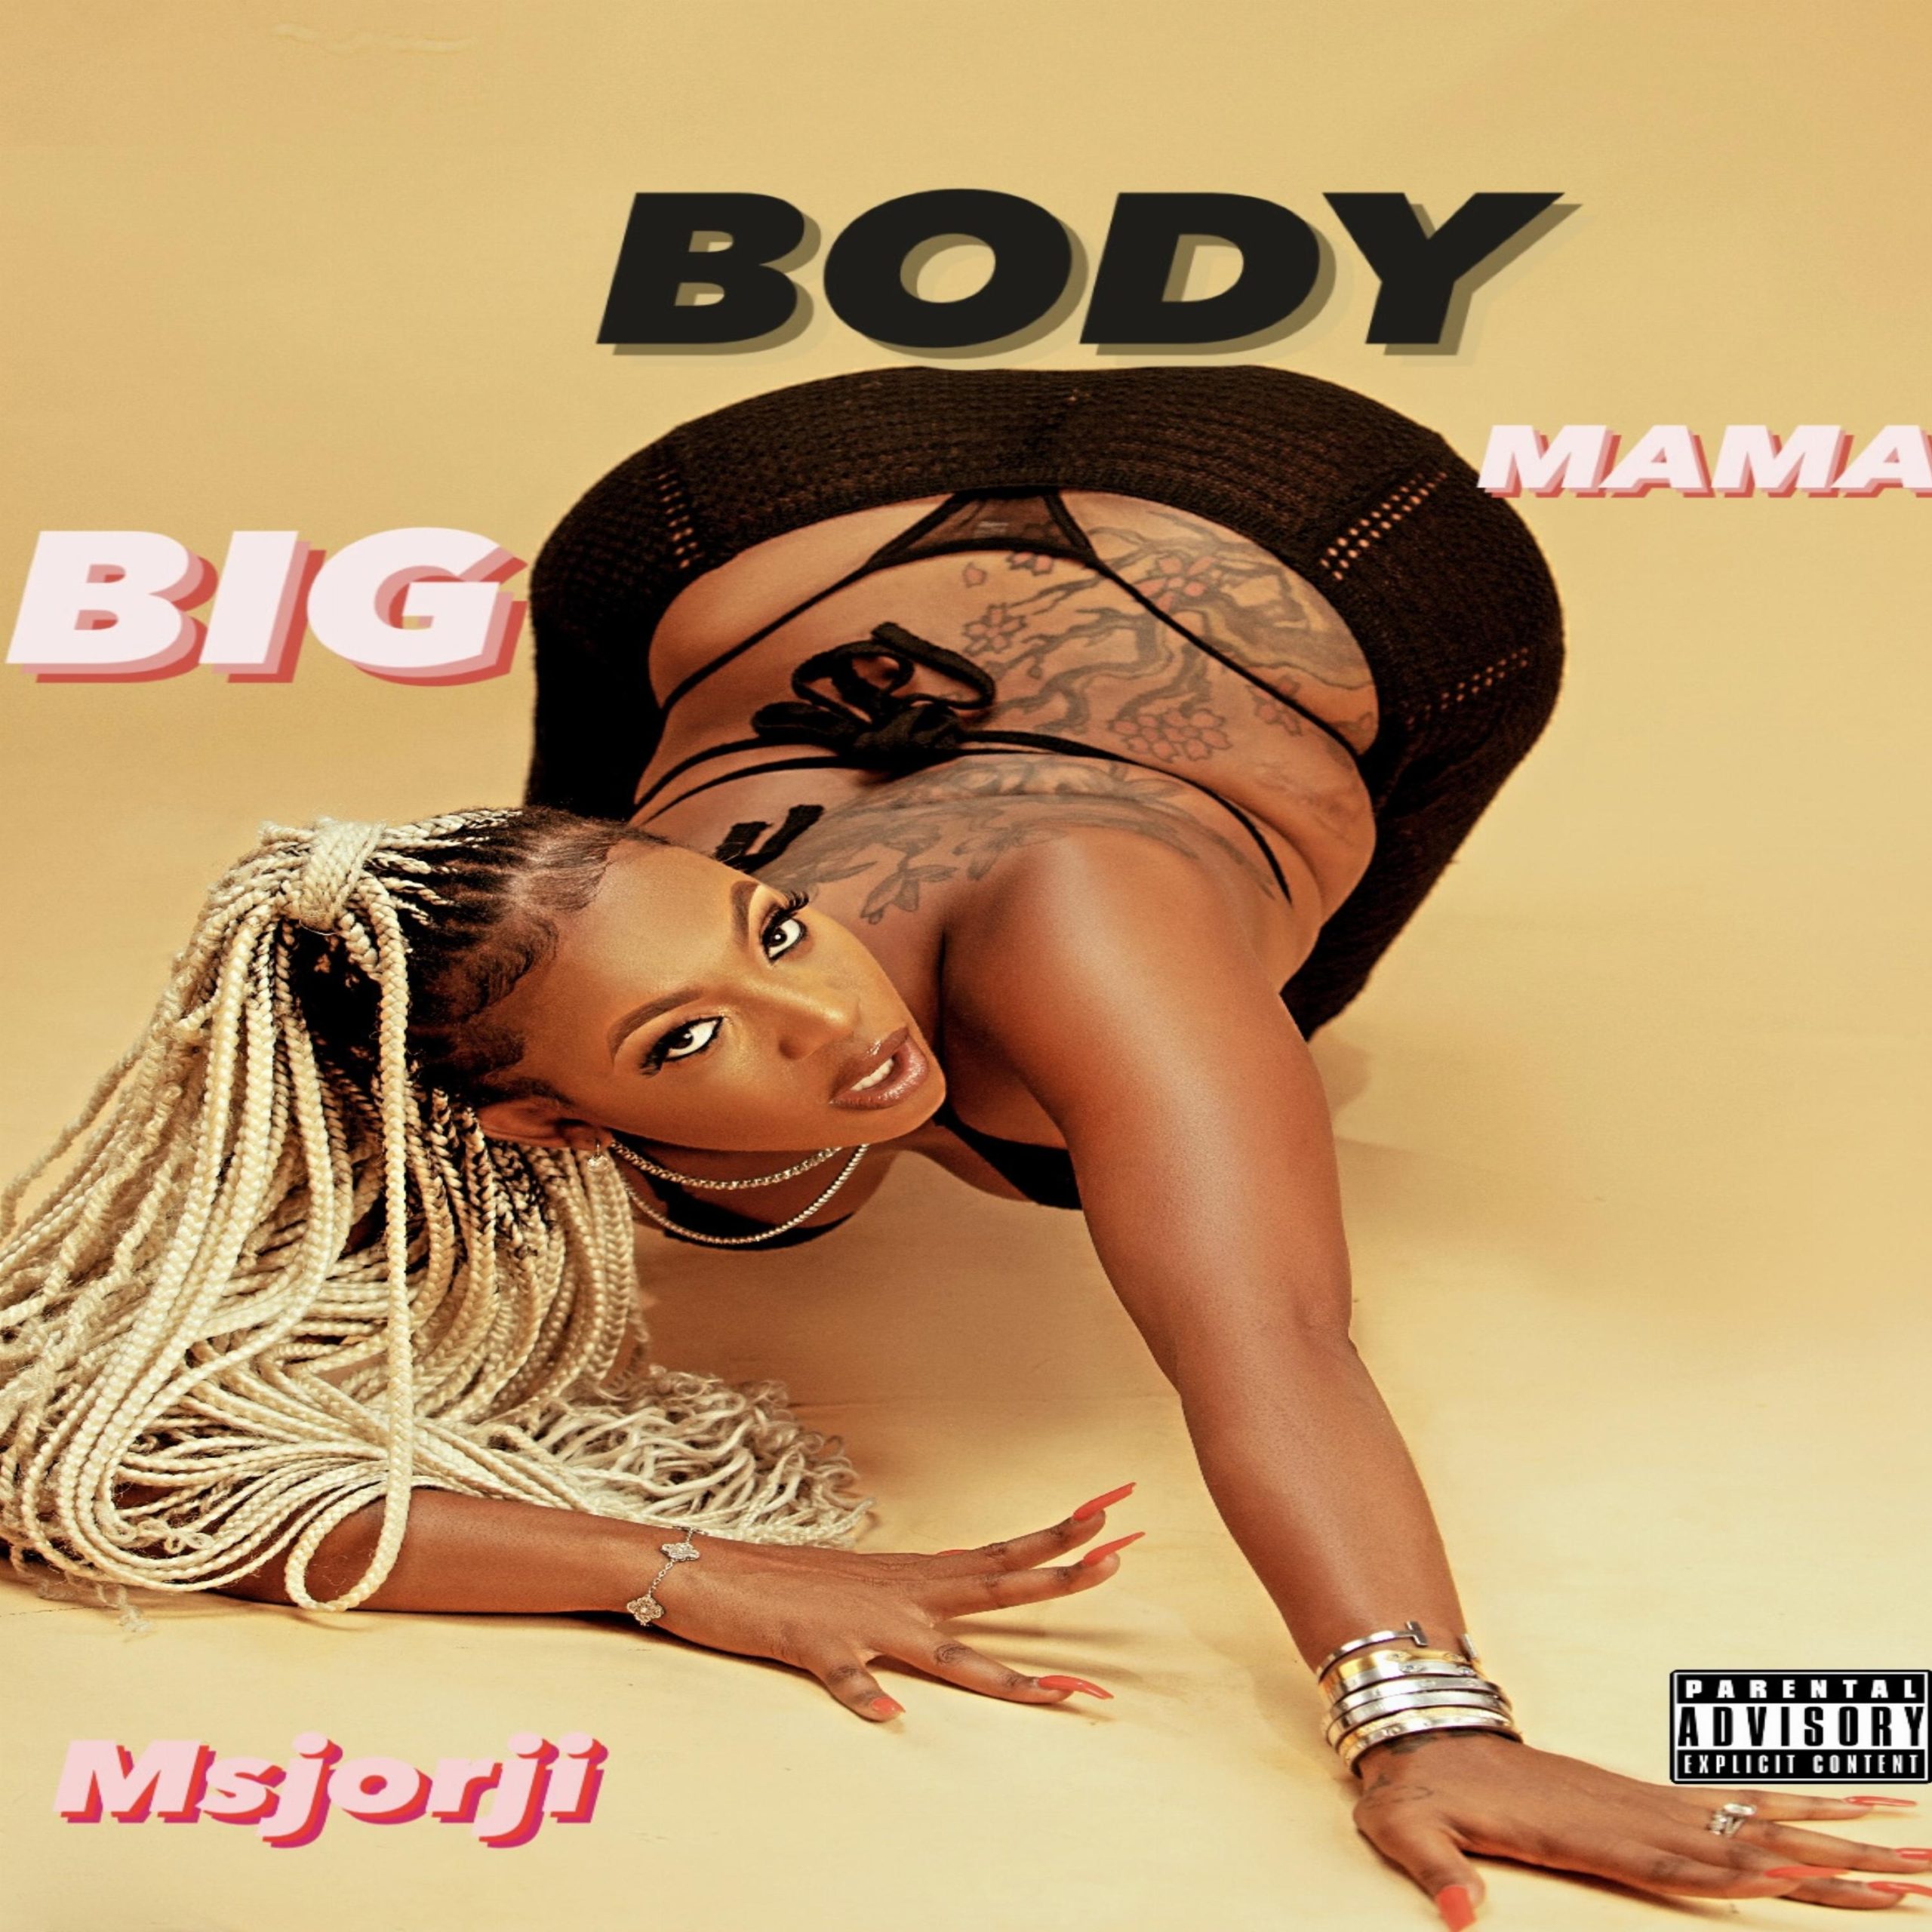 MsJorji – Big Body Mama